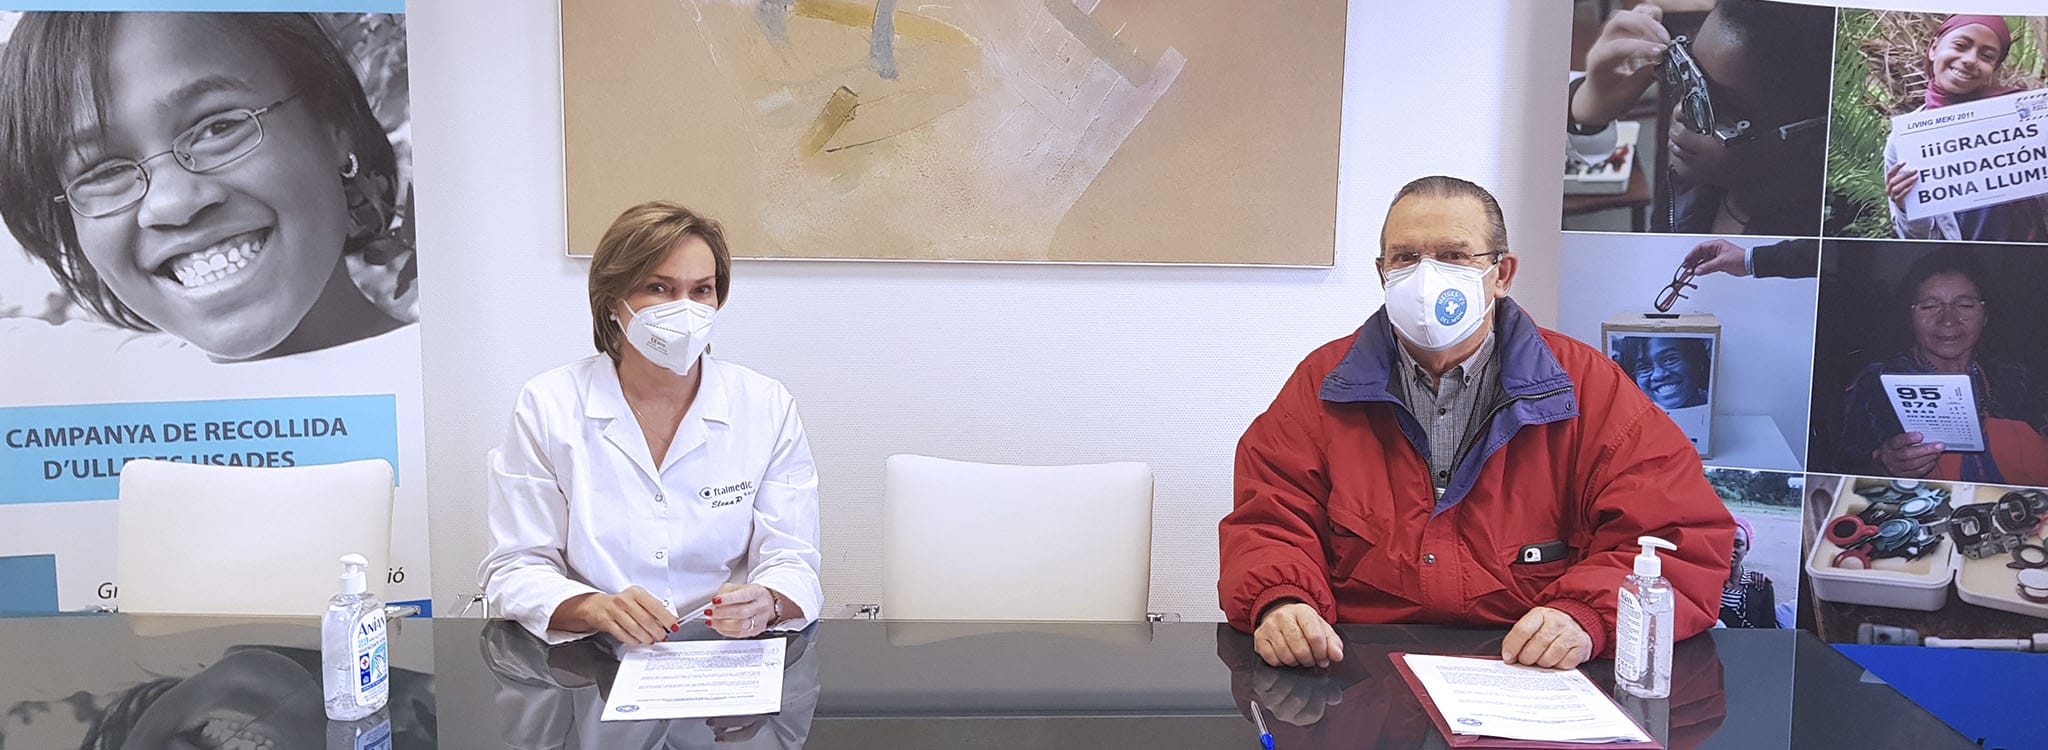 Fundació Bona Llum Oftalmedic colabora con Médicos del Mundo para repartir “Miradas”